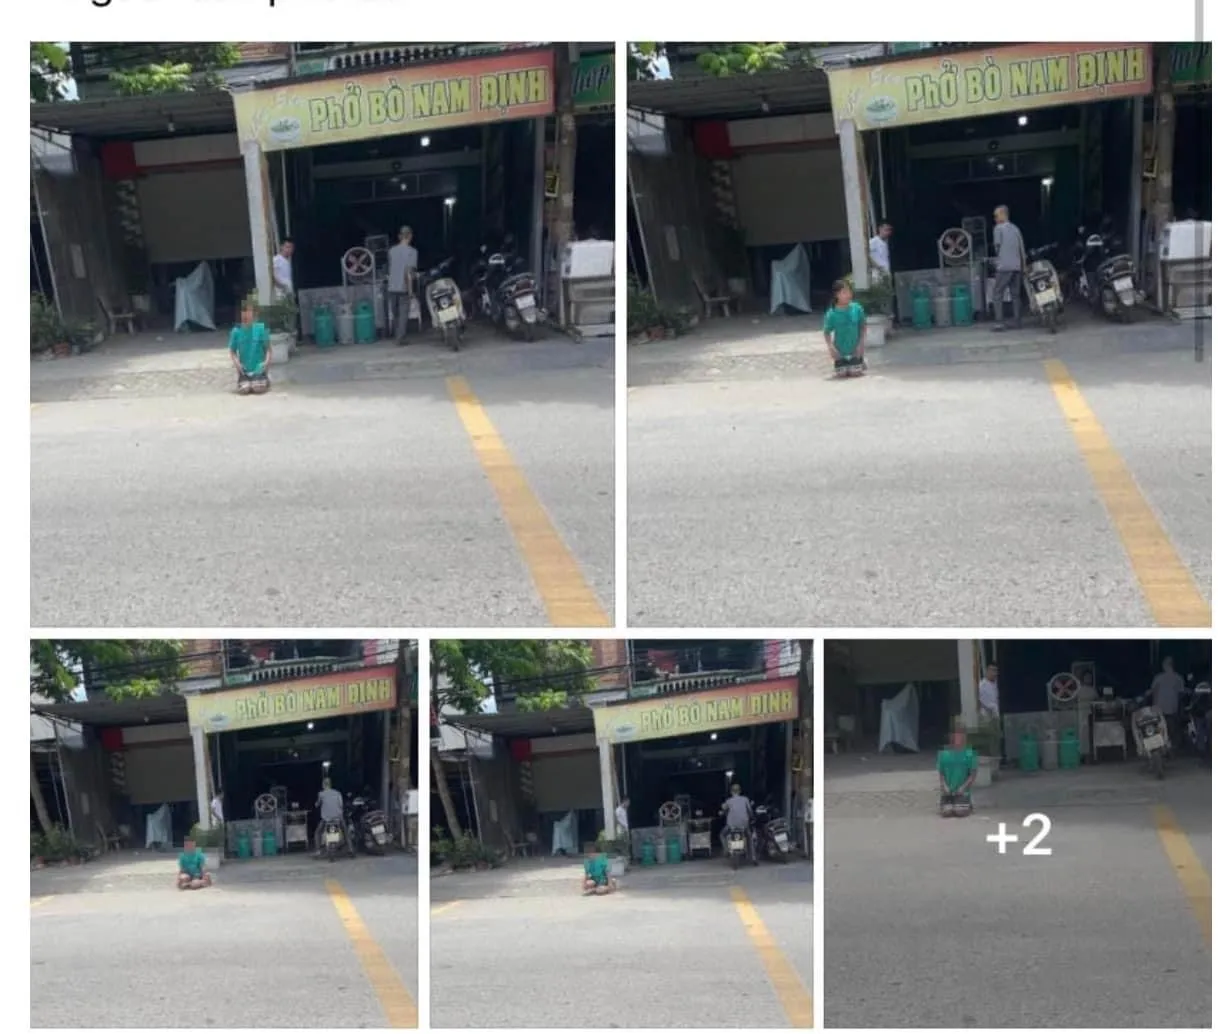 Phẫn nộ hình ảnh bé gái bị phạt quỳ trên đường bê tông giữa tiết trời nóng như 'đốt', chính quyền vào cuộc